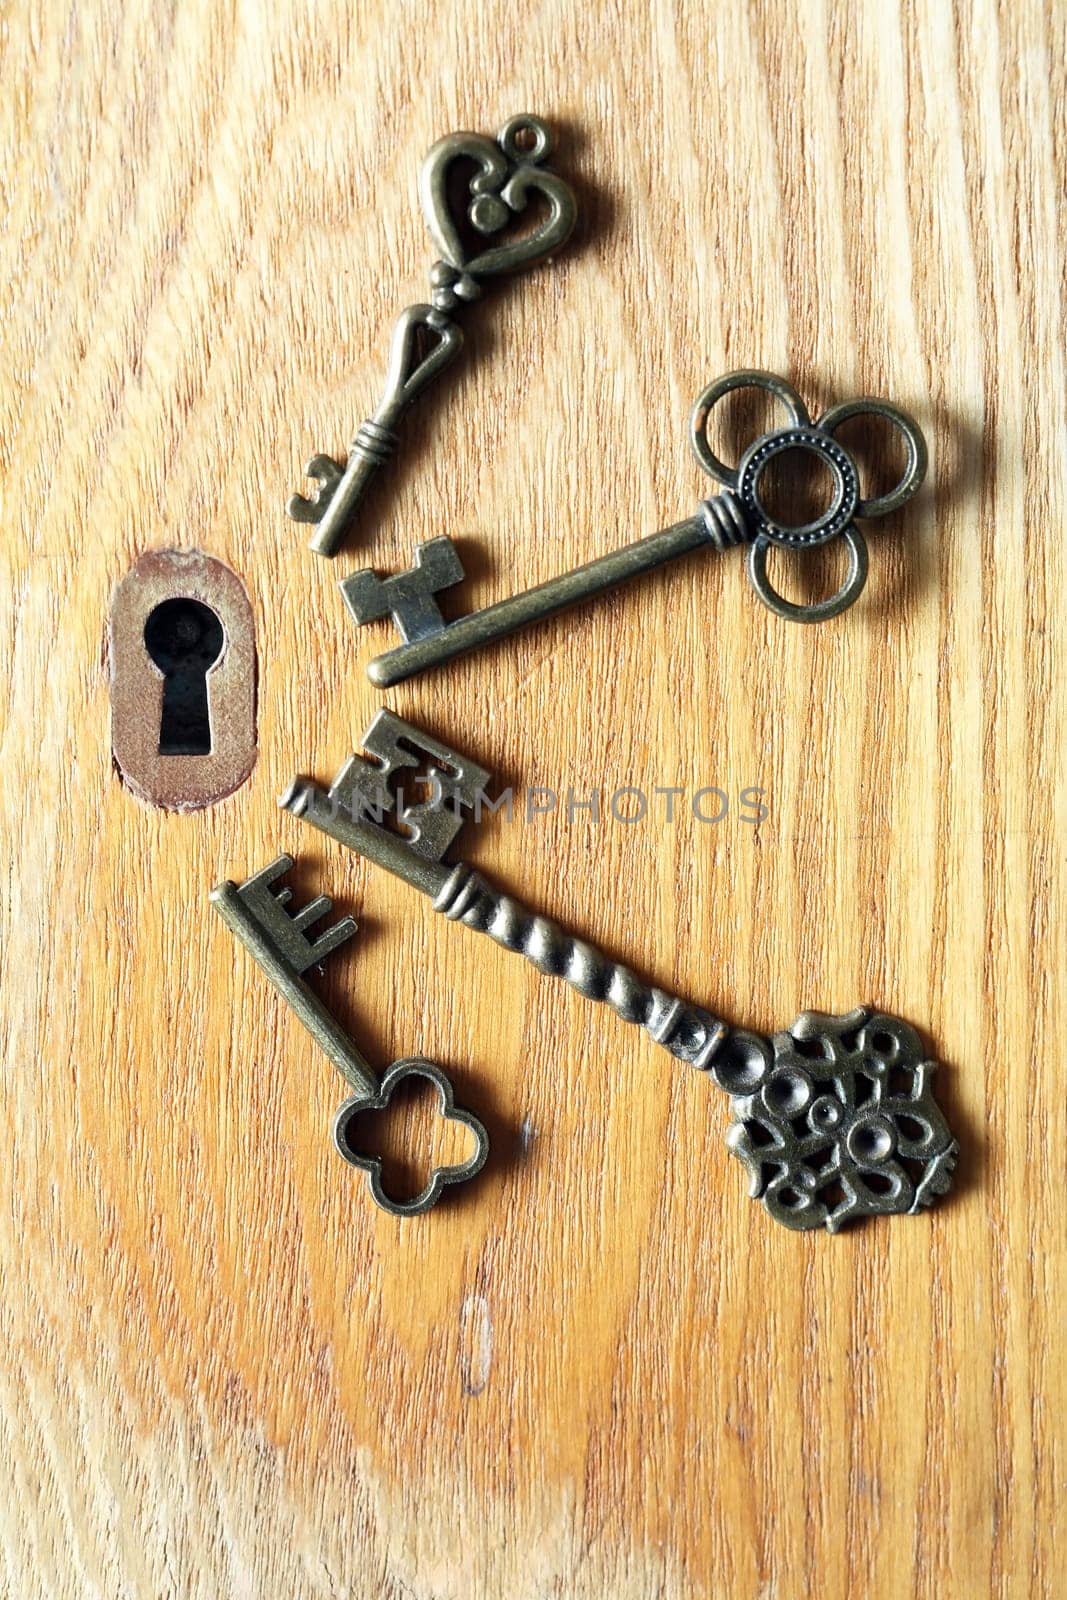 Set of various old keys closeup near keyhole